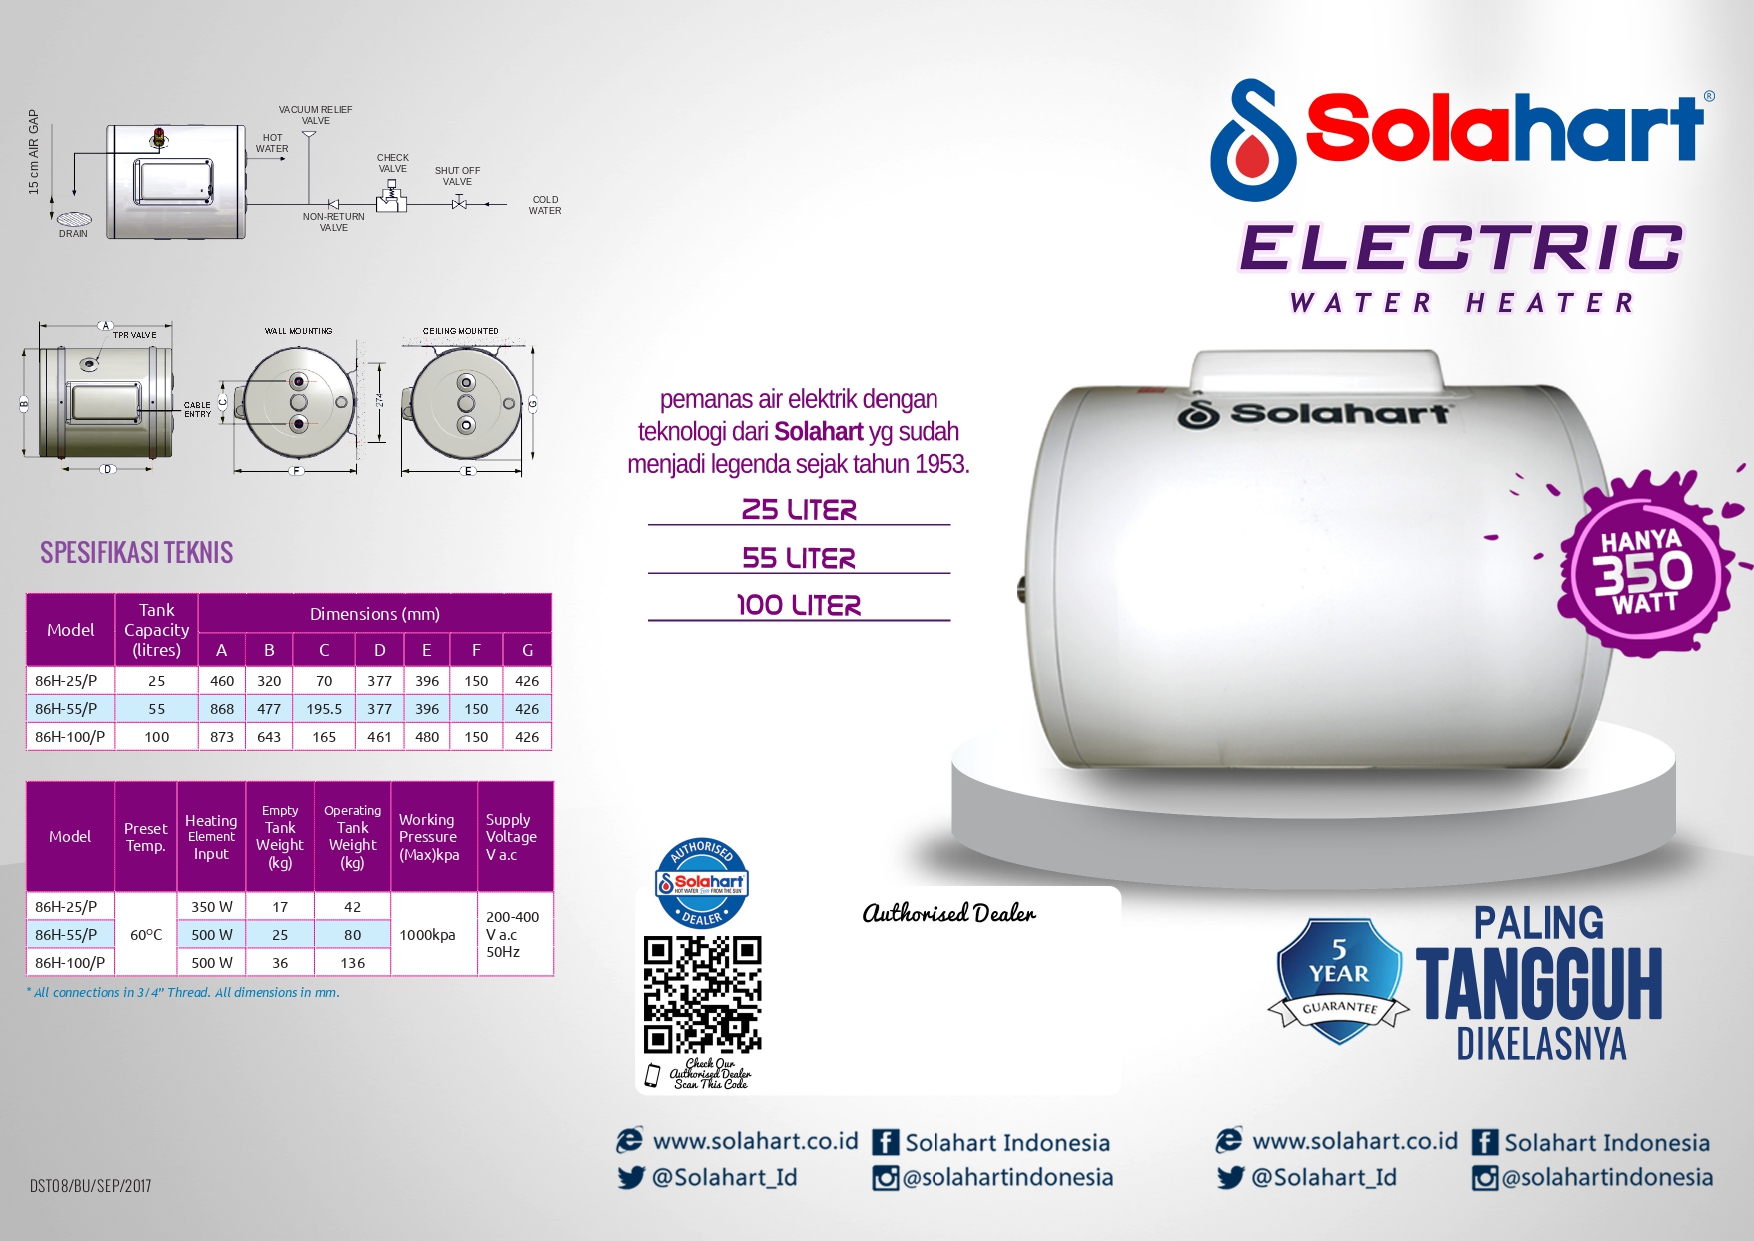 Solahart Electric